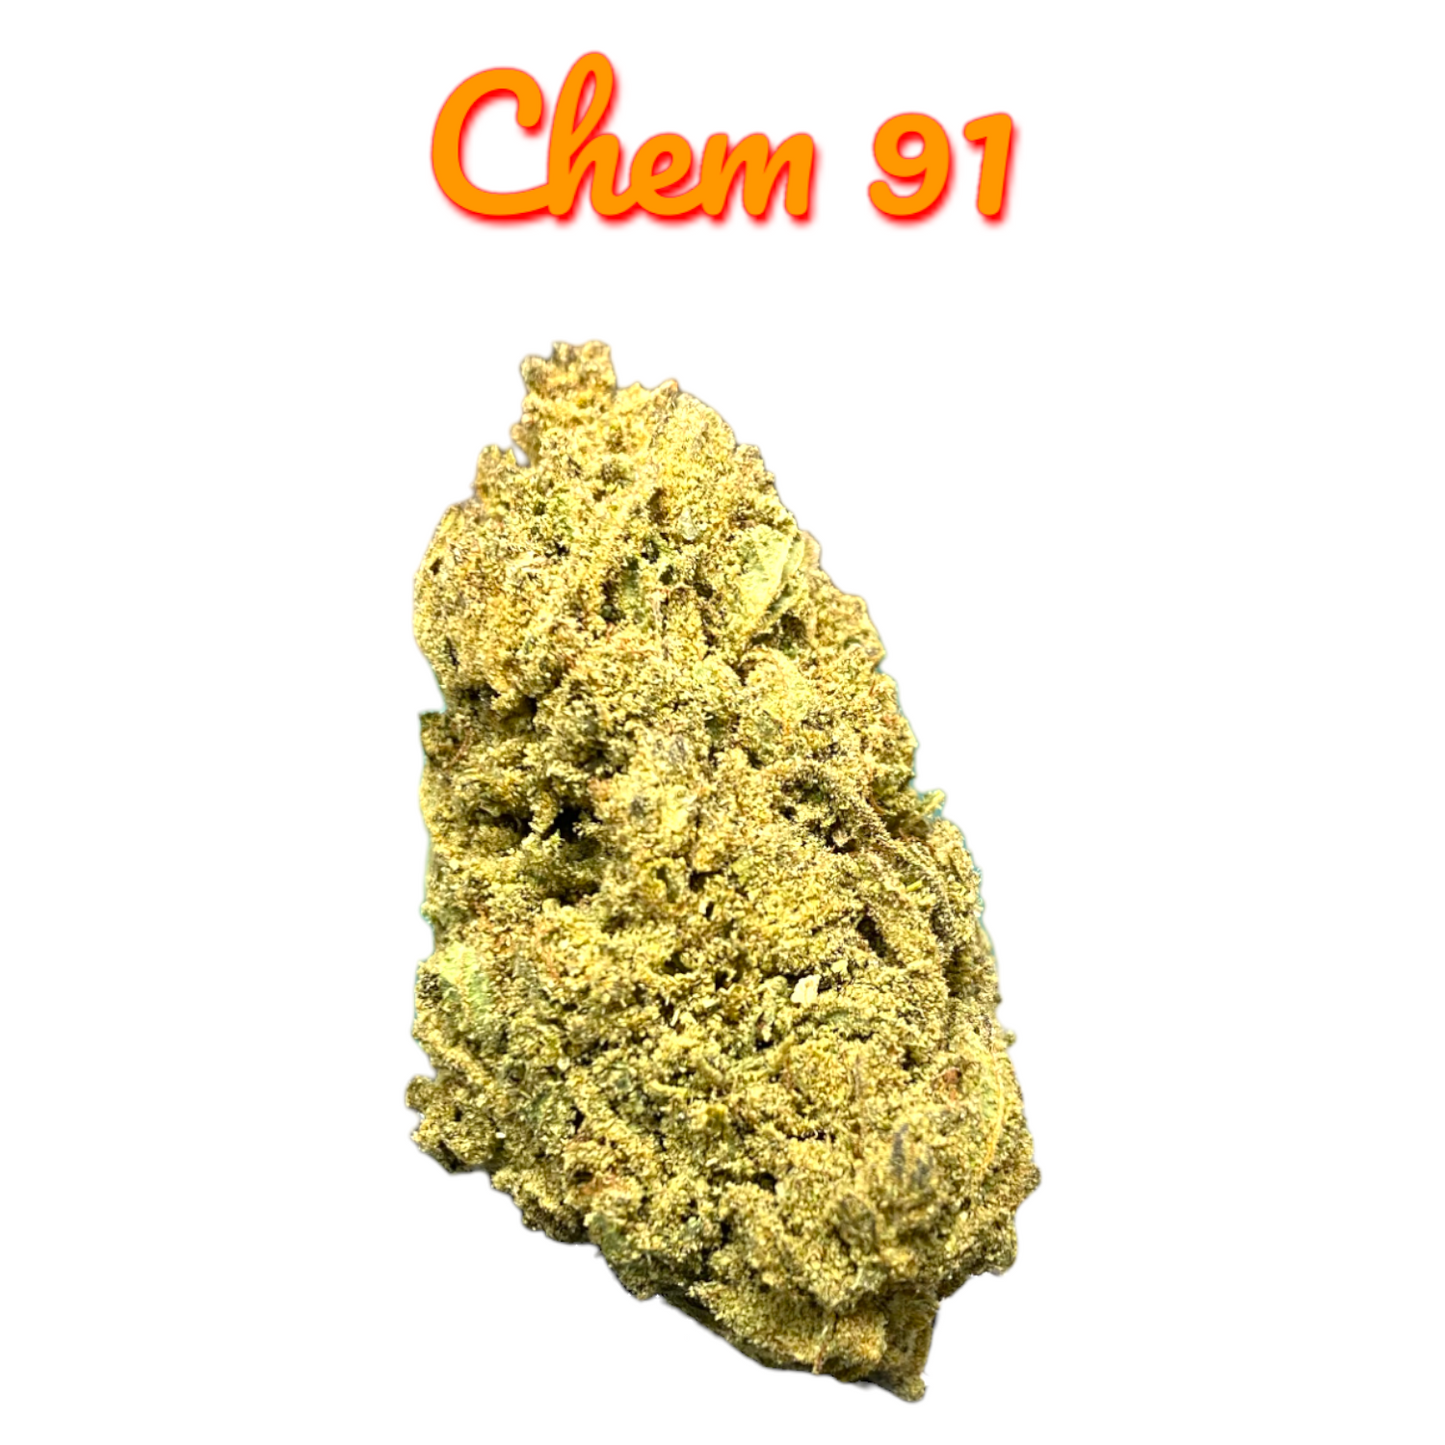 chem 91 strain